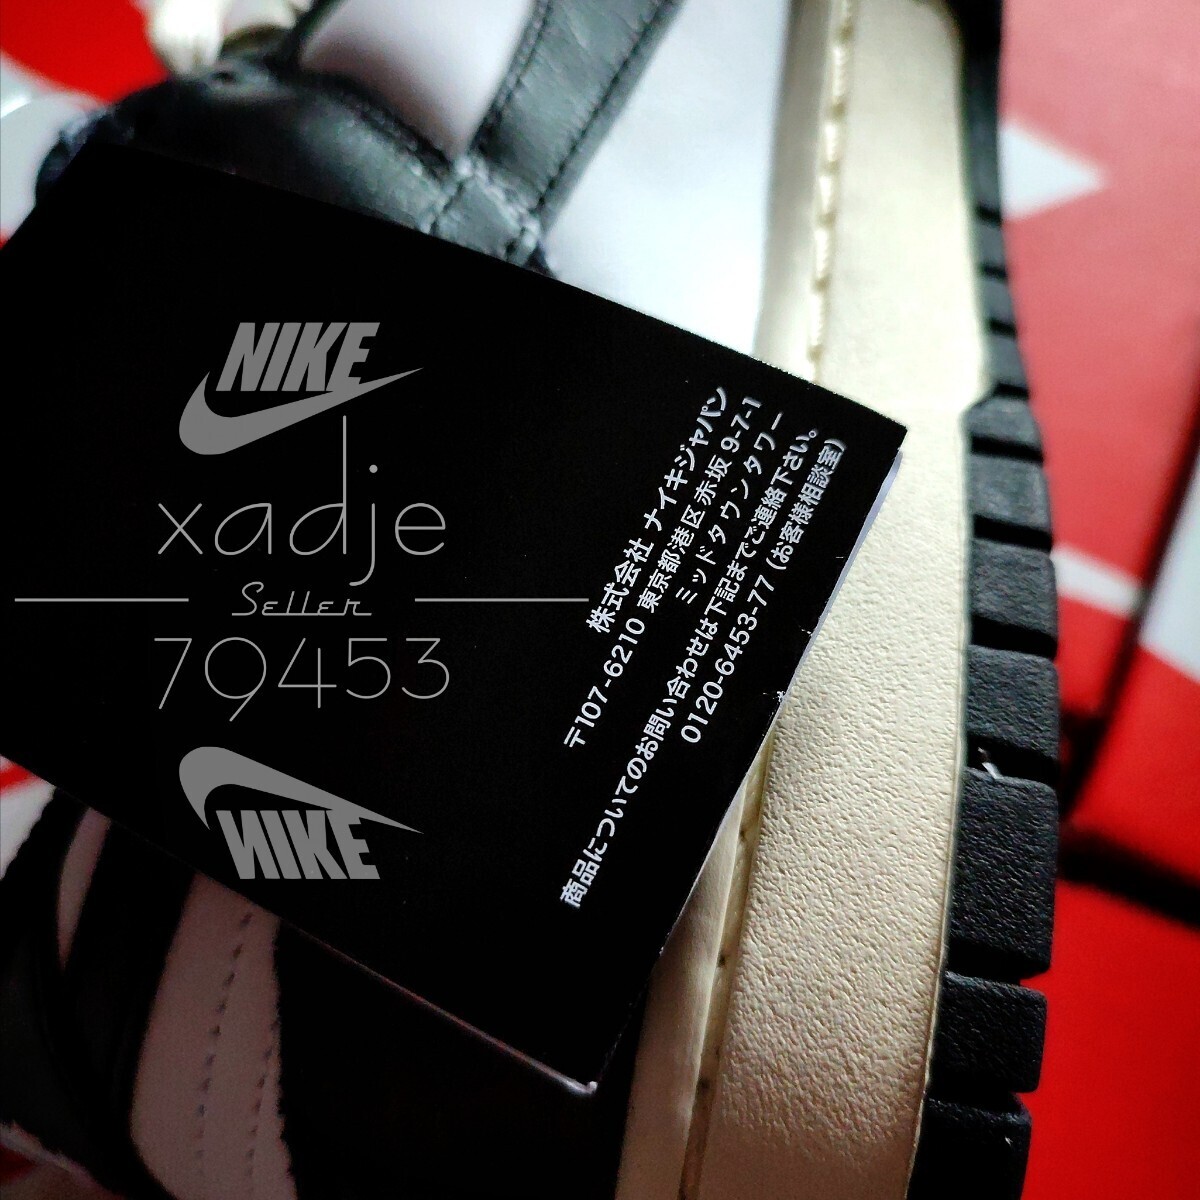  новый товар стандартный товар NIKE Nike Dunk DUNK белый белый чёрный черный WMNS 28cm ( реальный качество 27~27.5cm) US11 натуральная кожа с коробкой 